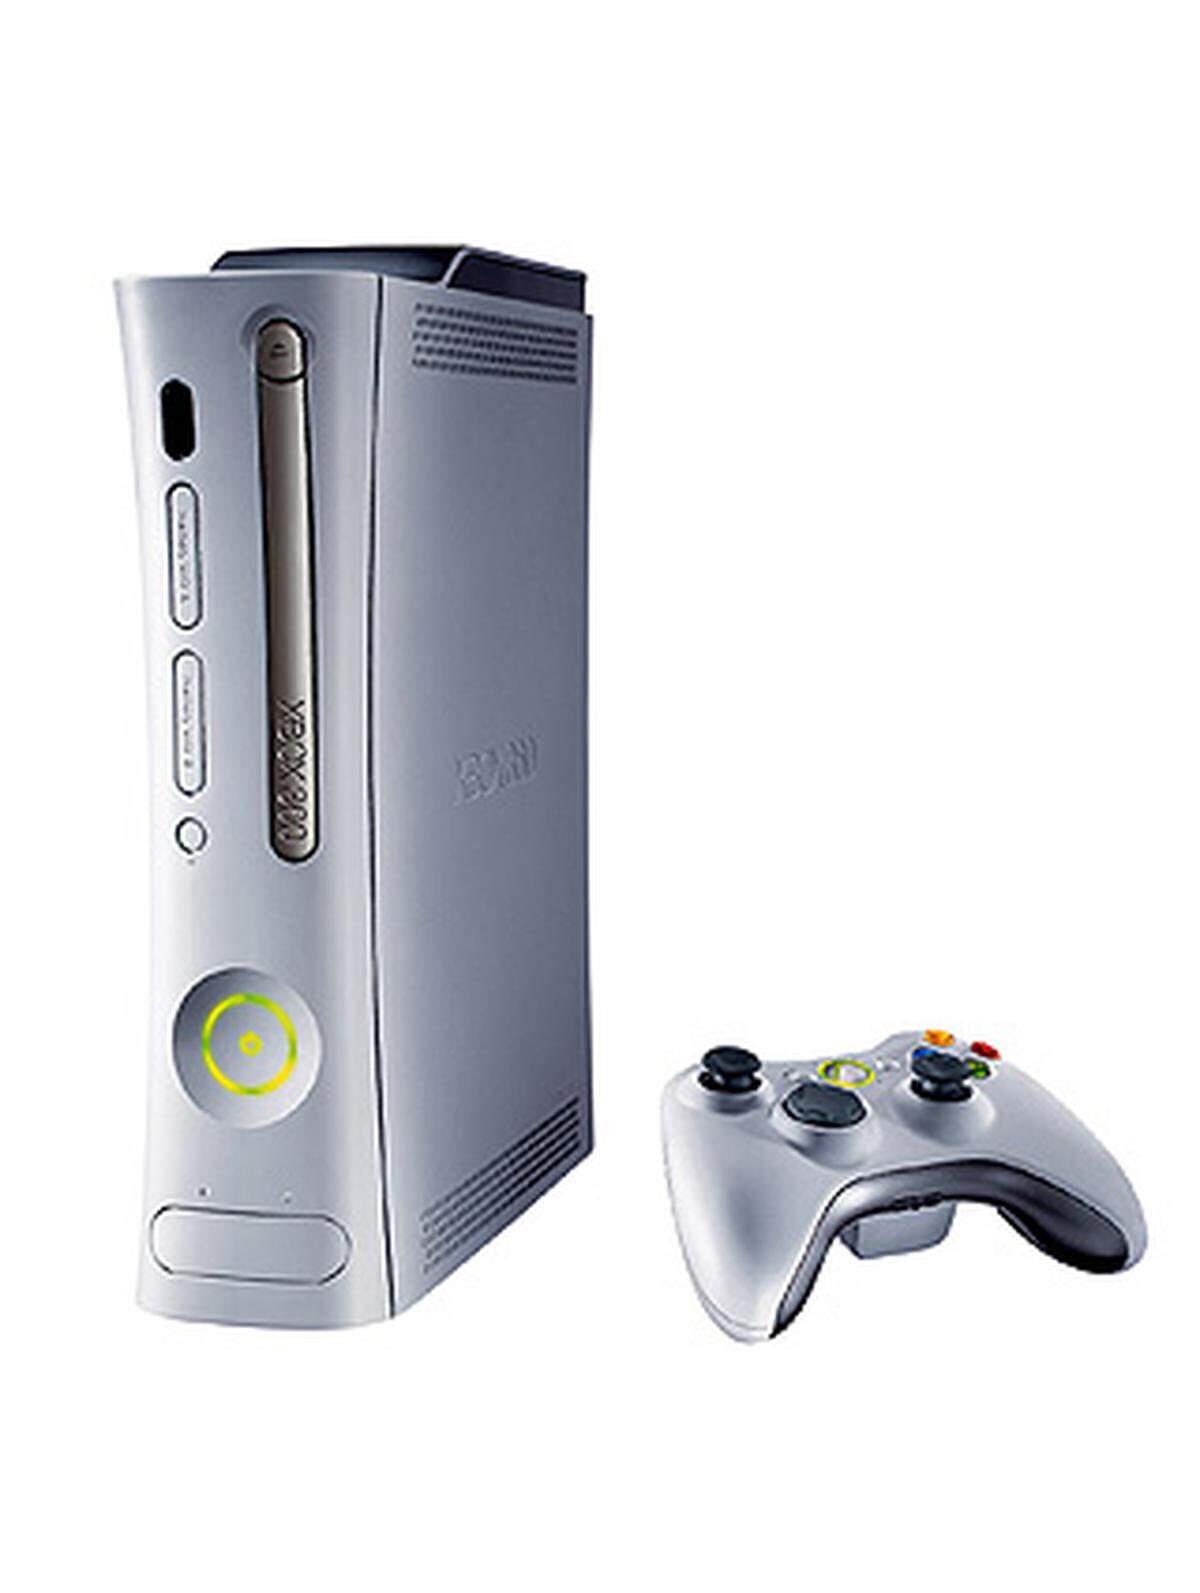 Nur vier Jahre später startete Microsoft der die Nachfolger-Generation, die Xbox 360.  Die neue Konsole verfügt neben deutlich höherer Rechenleistung über eine Festplatte (optional) und einen Netzwerkanschluss über den eine Verbindung zum Online-Dienst Xbox-Live hergestellt werden kann.